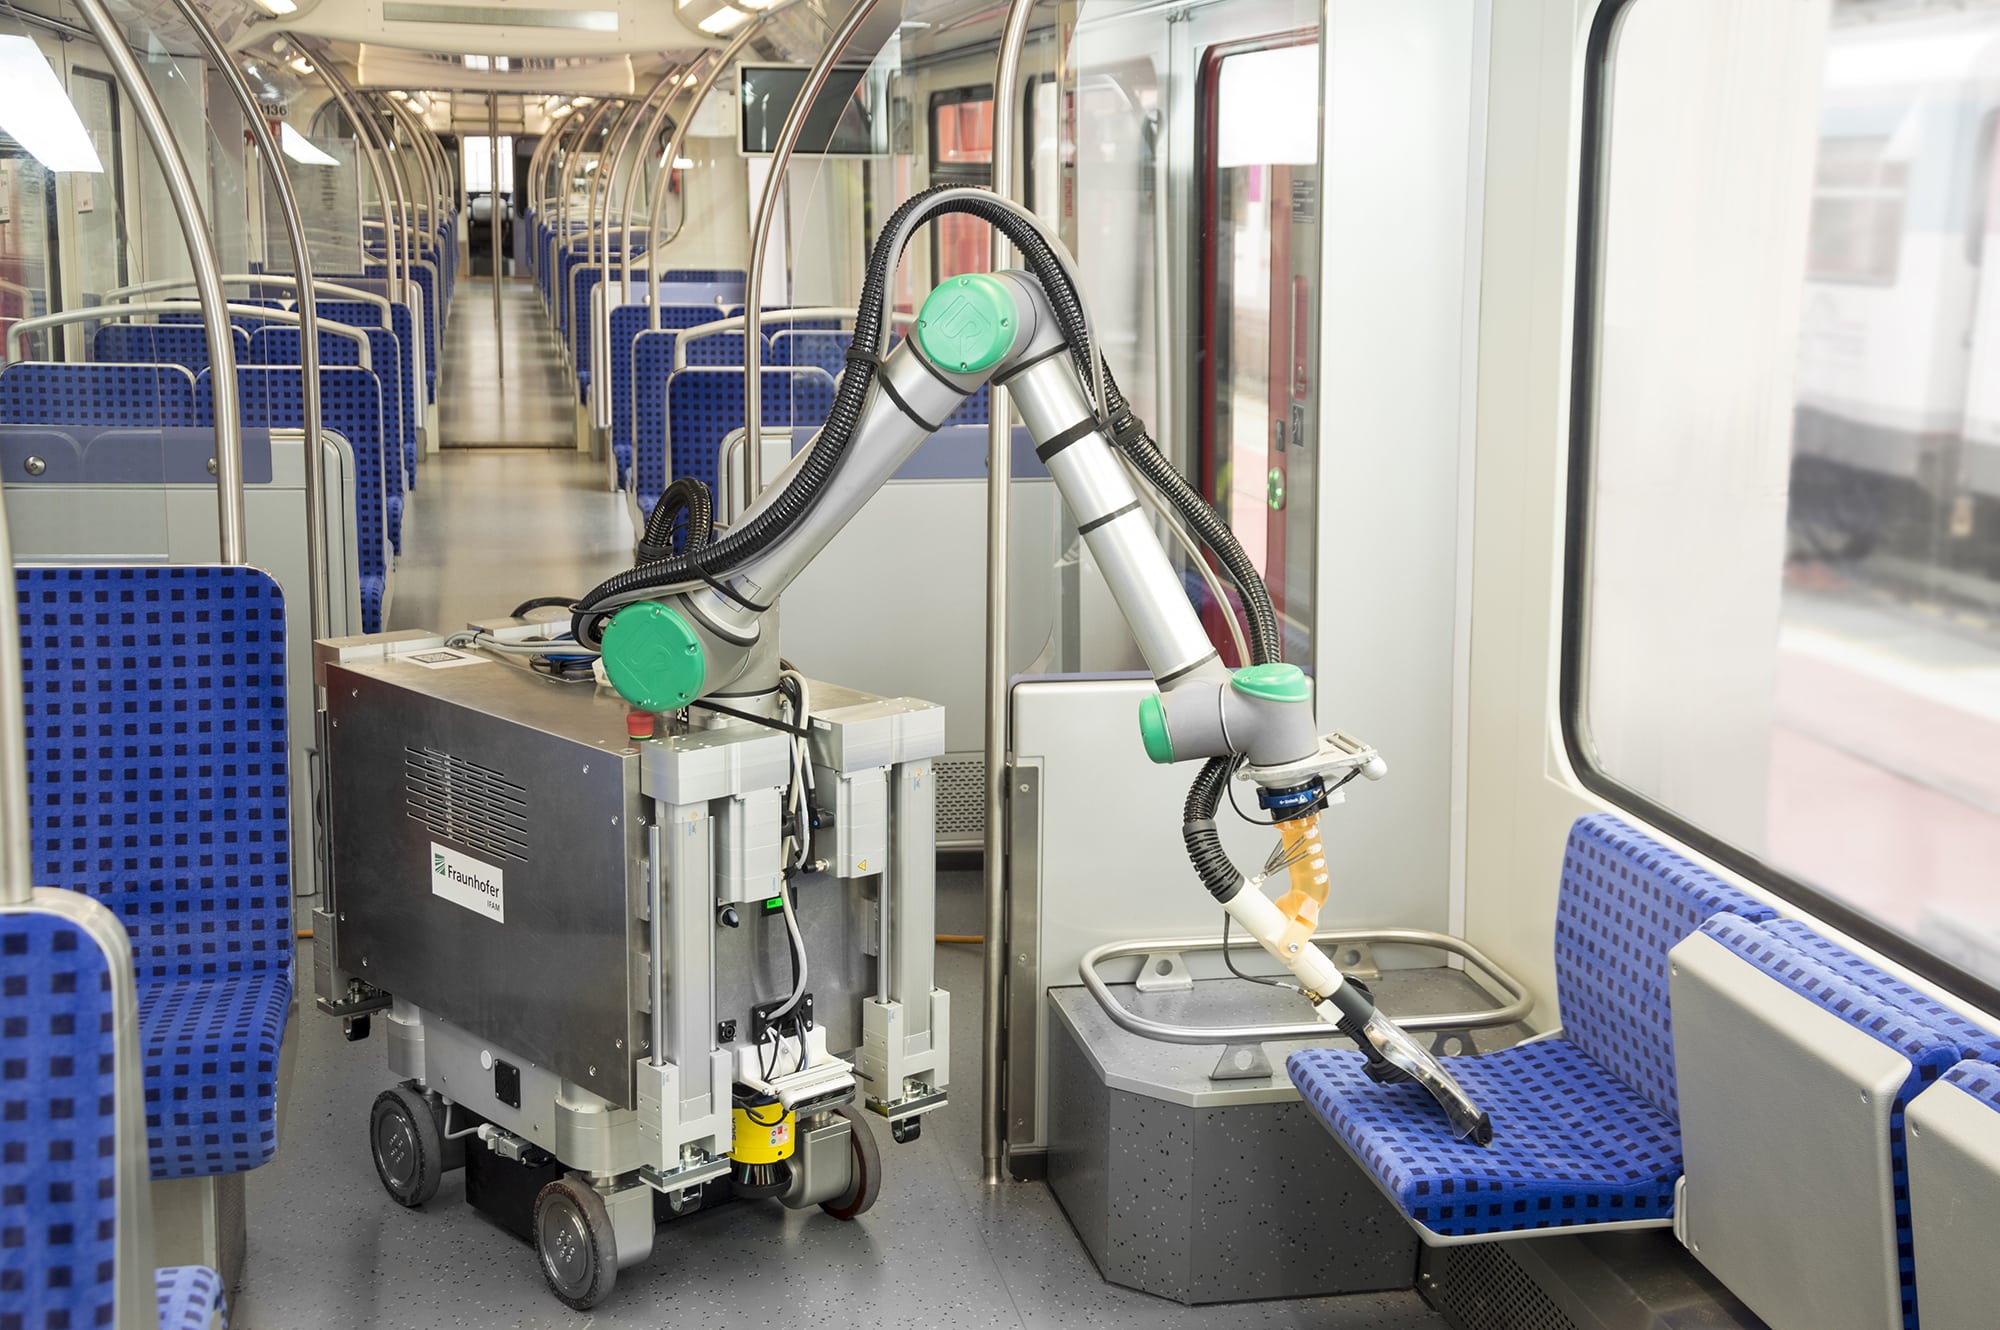 Mobiler Roboter beamt autonom im Zug